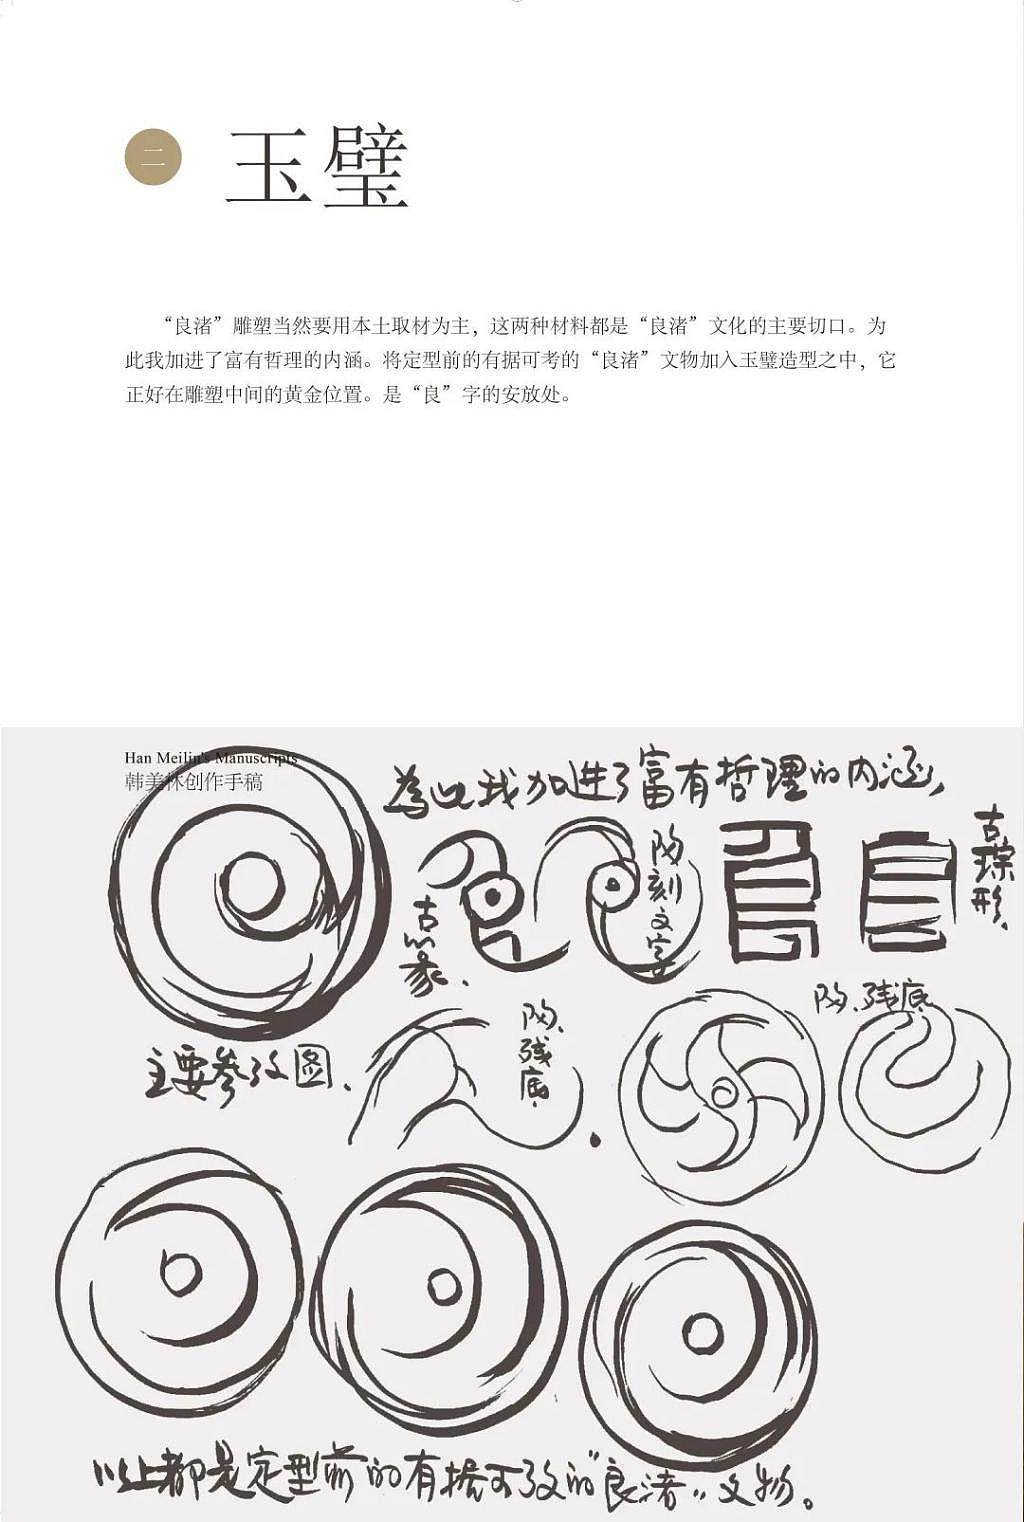 韩美林设计，良渚国家遗址考古公园的标志雕塑惊艳亮相 - 14